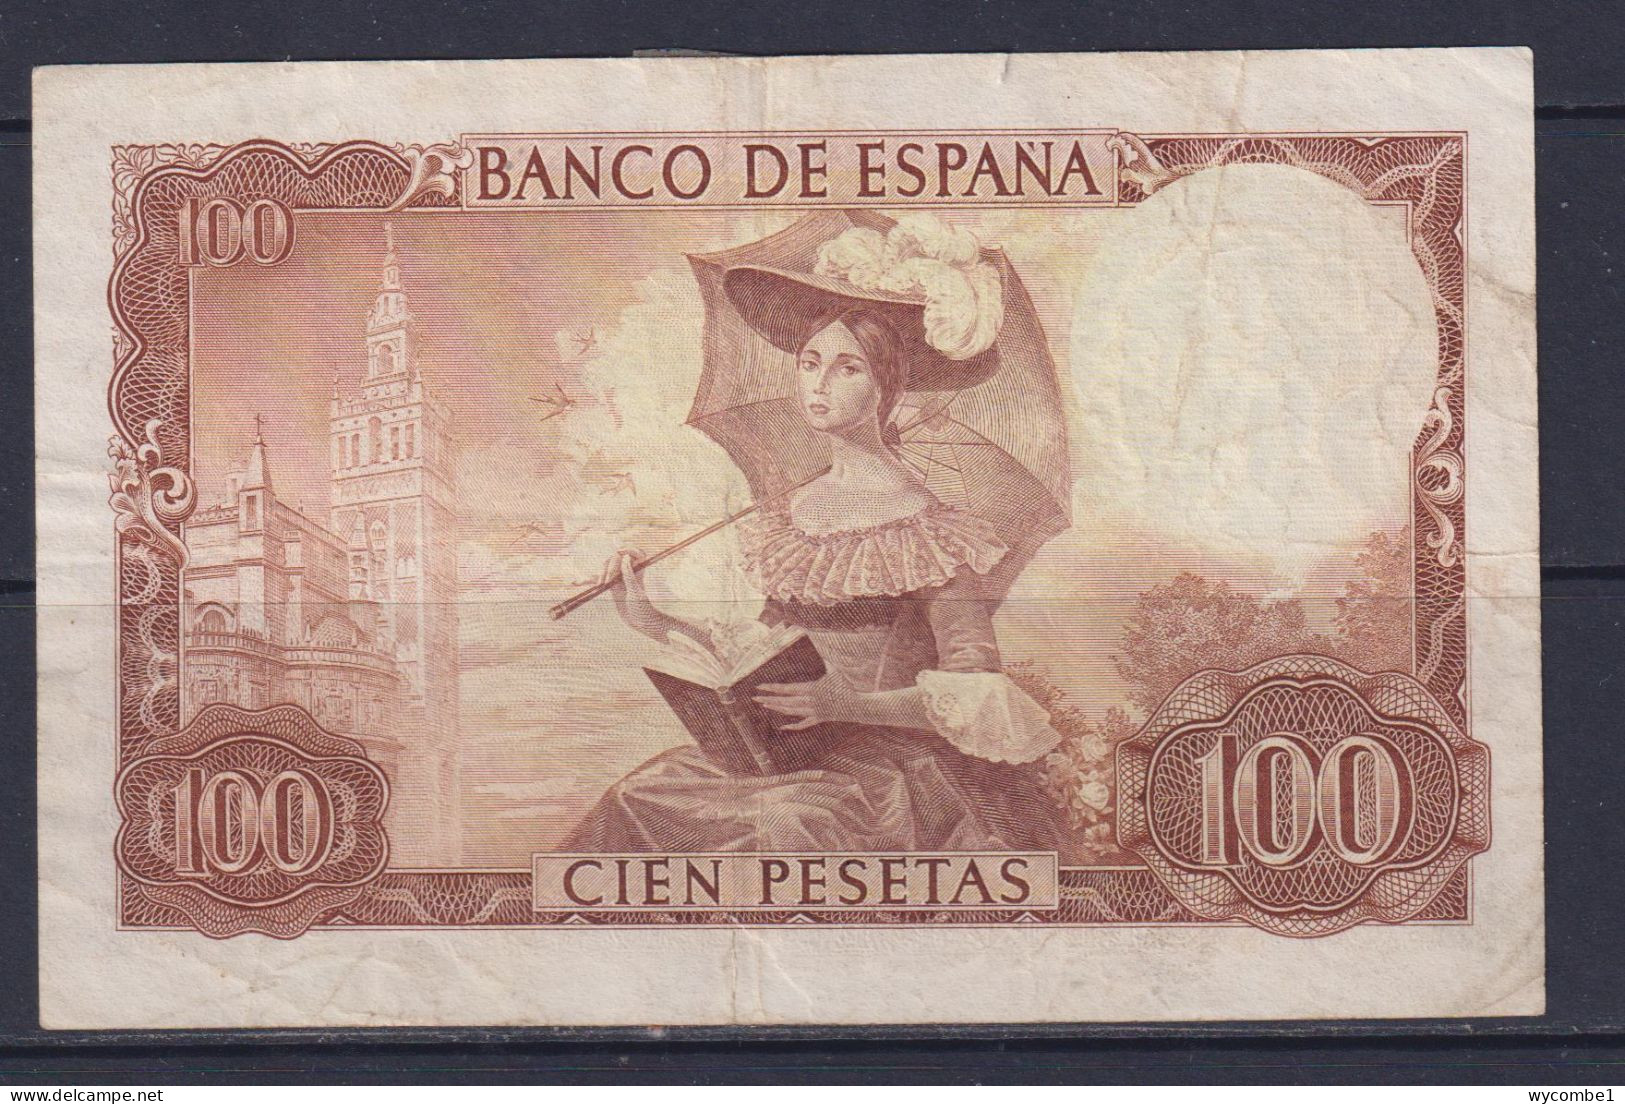 SPAIN - 1965 100 Pesetas Circulated Banknote (Torn And Taped) - 100 Pesetas